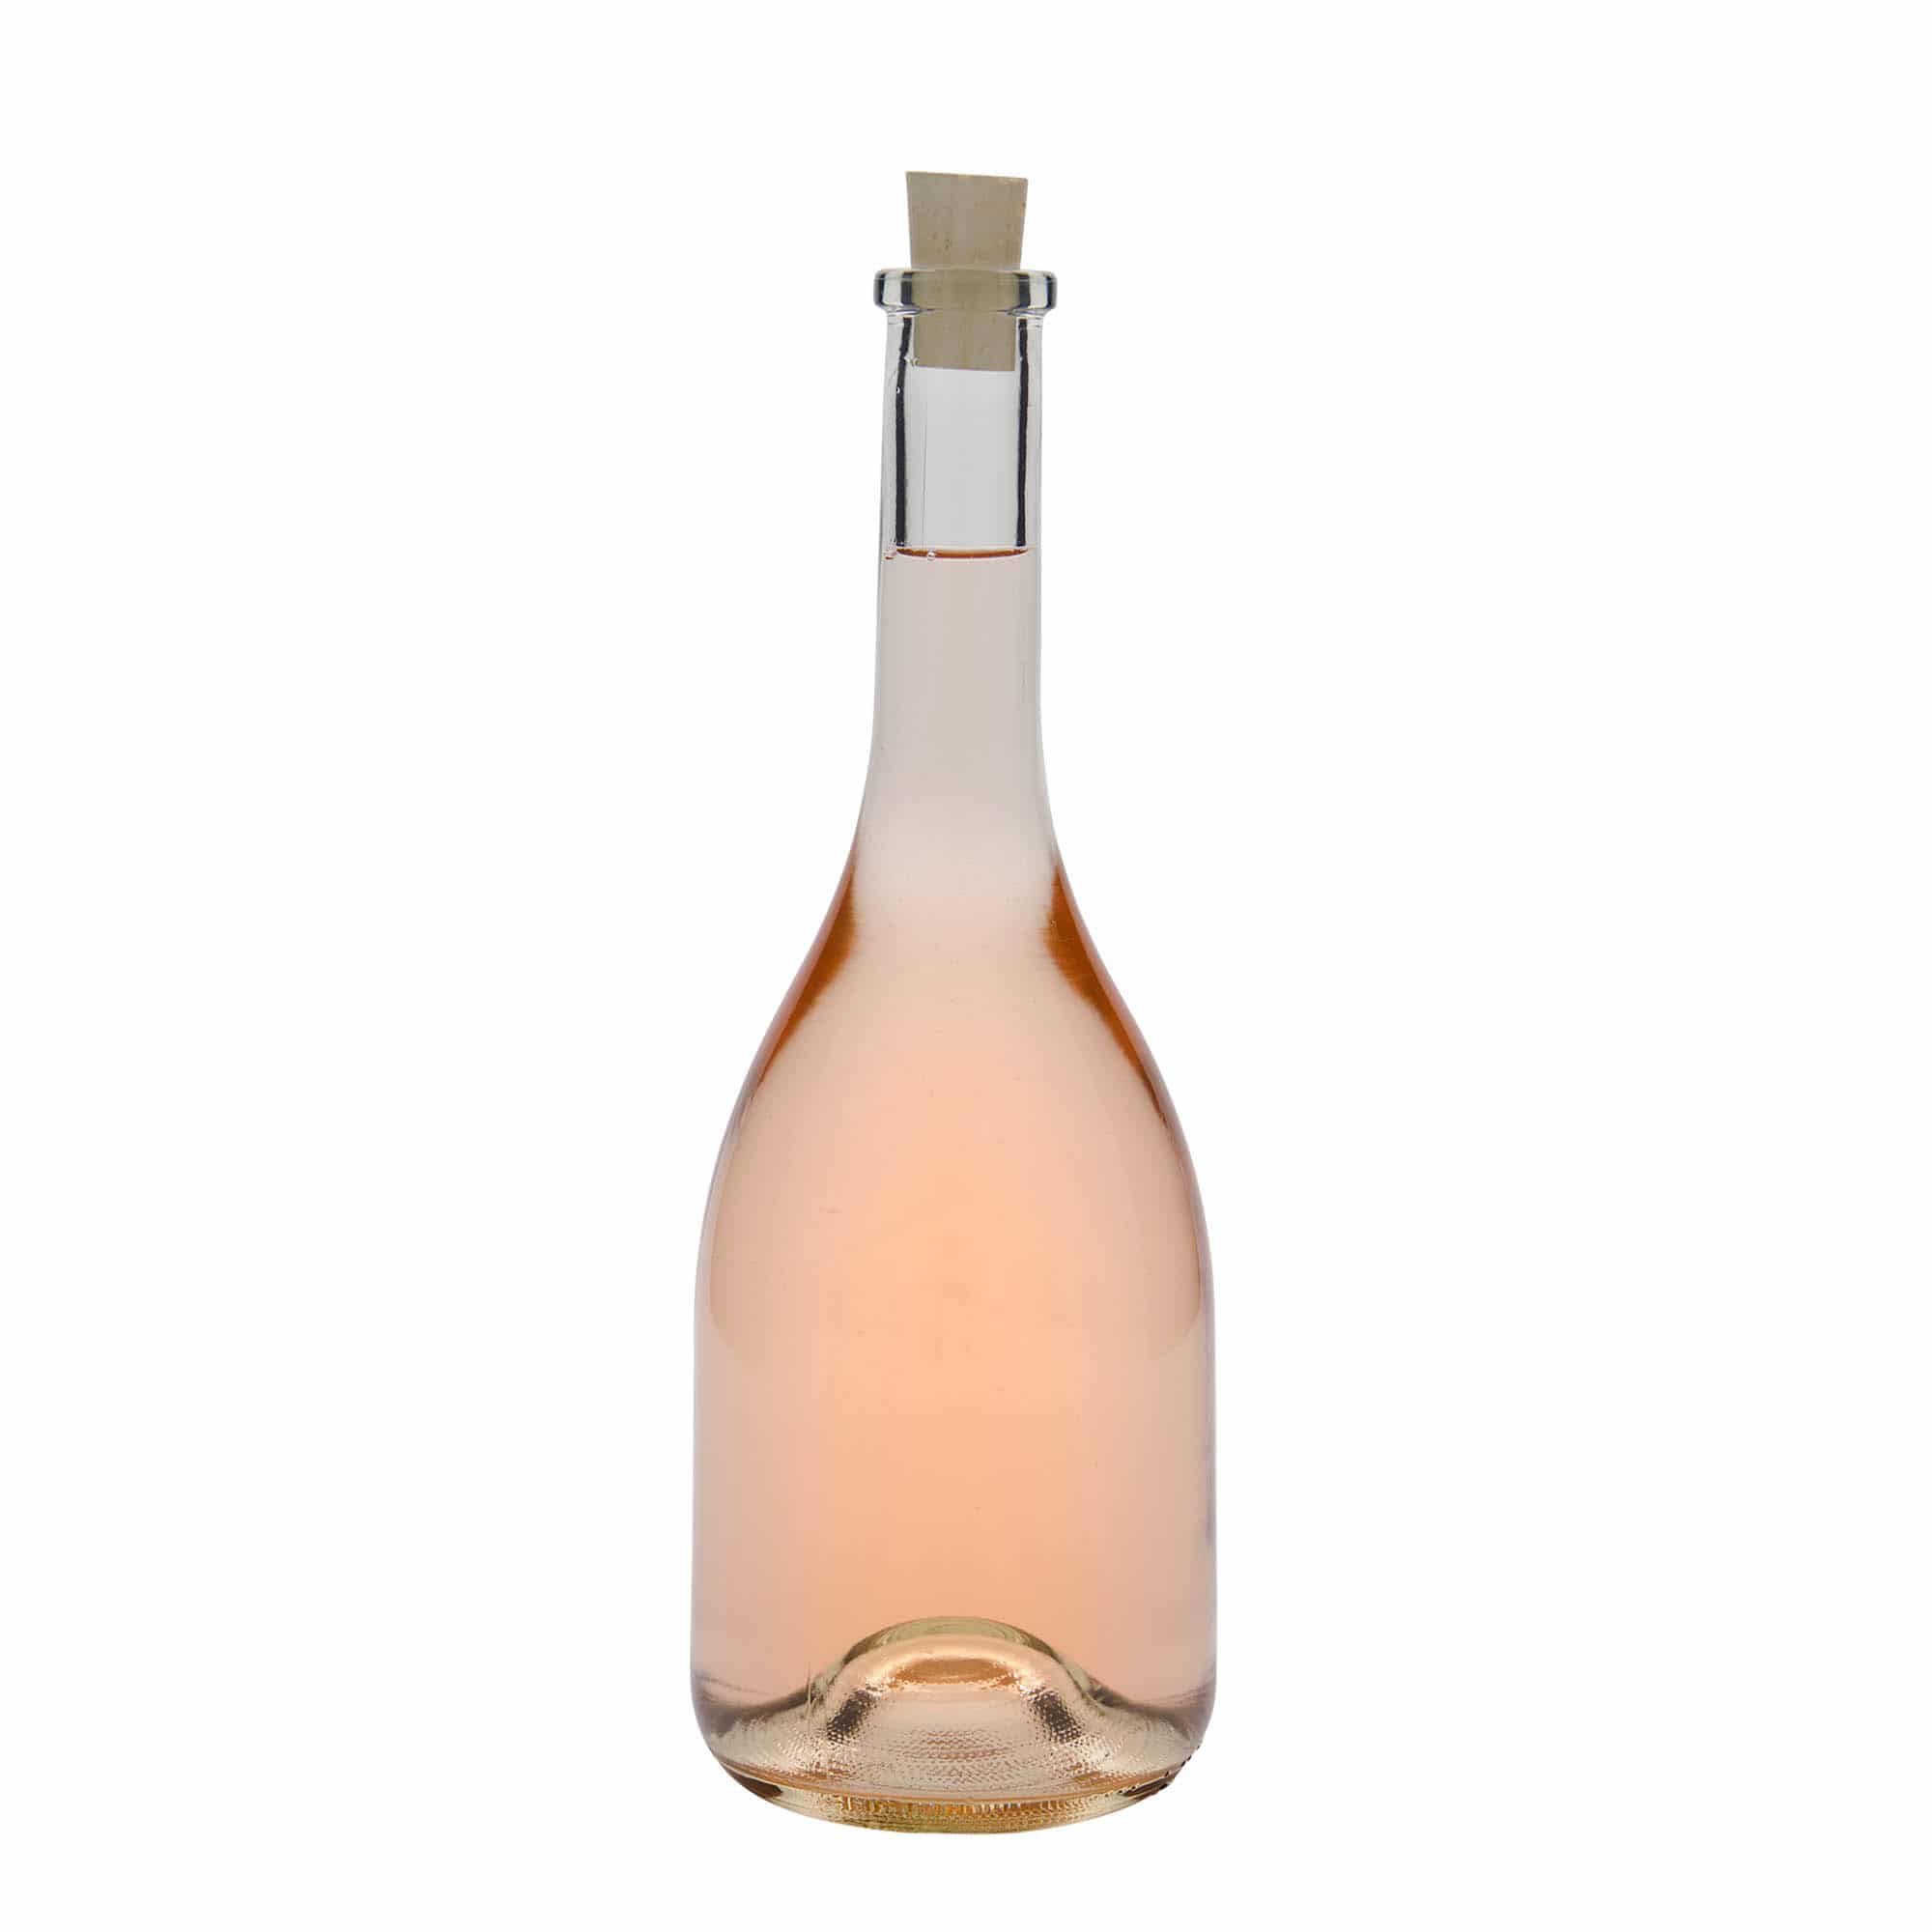 750 ml glass bottle 'Rustica', closure: cork